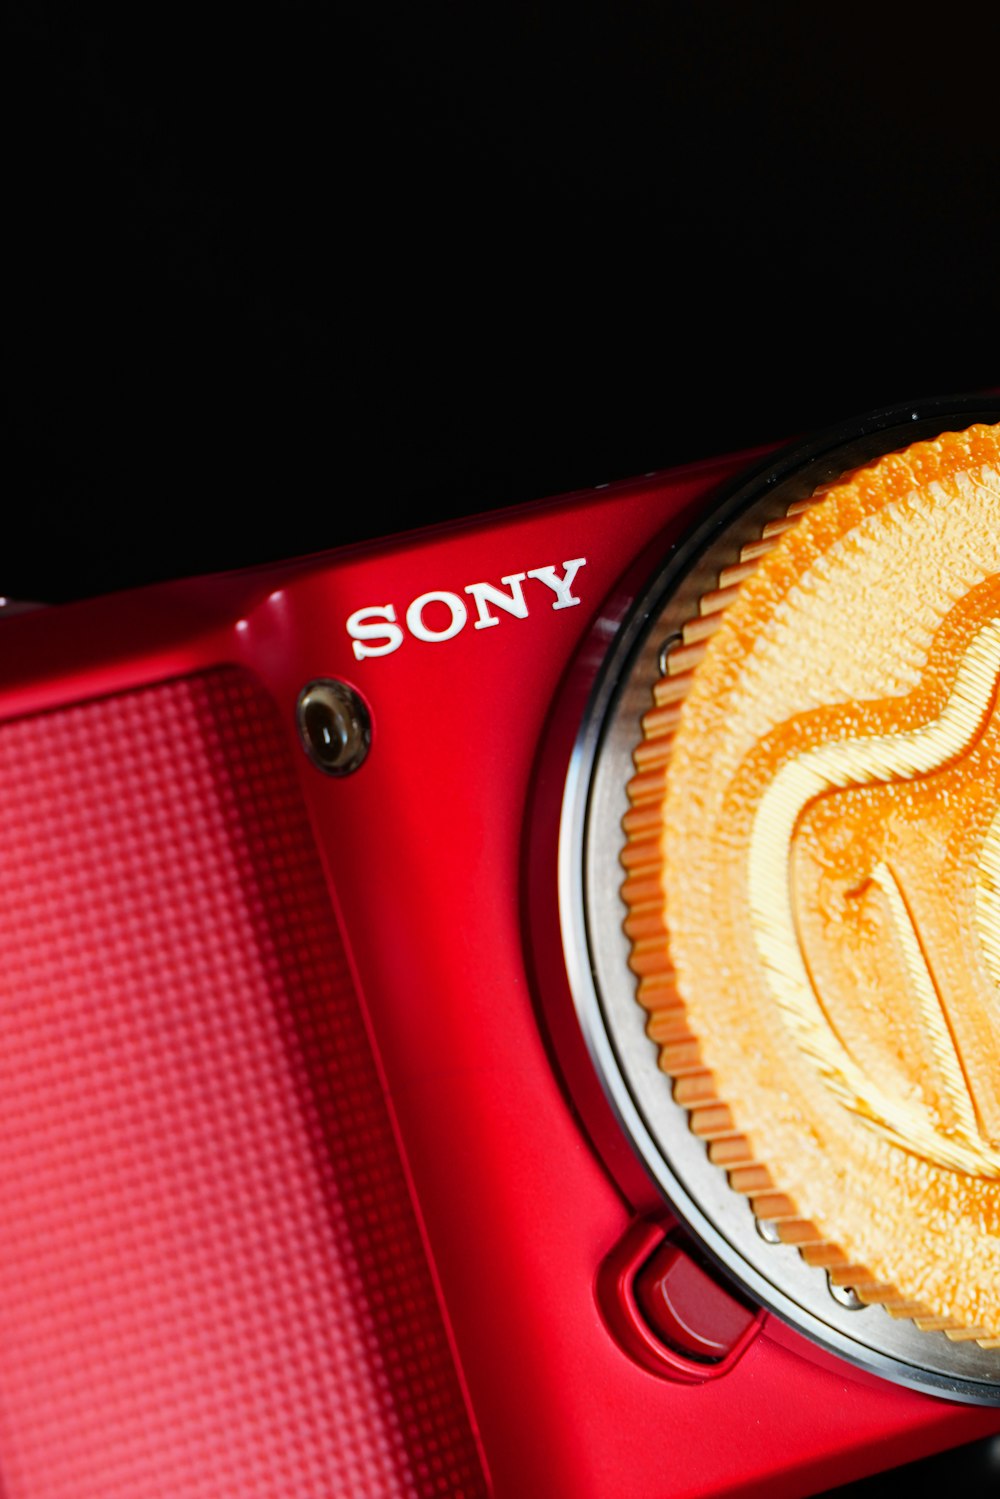 Una fotocamera Sony rossa con un biscotto sopra